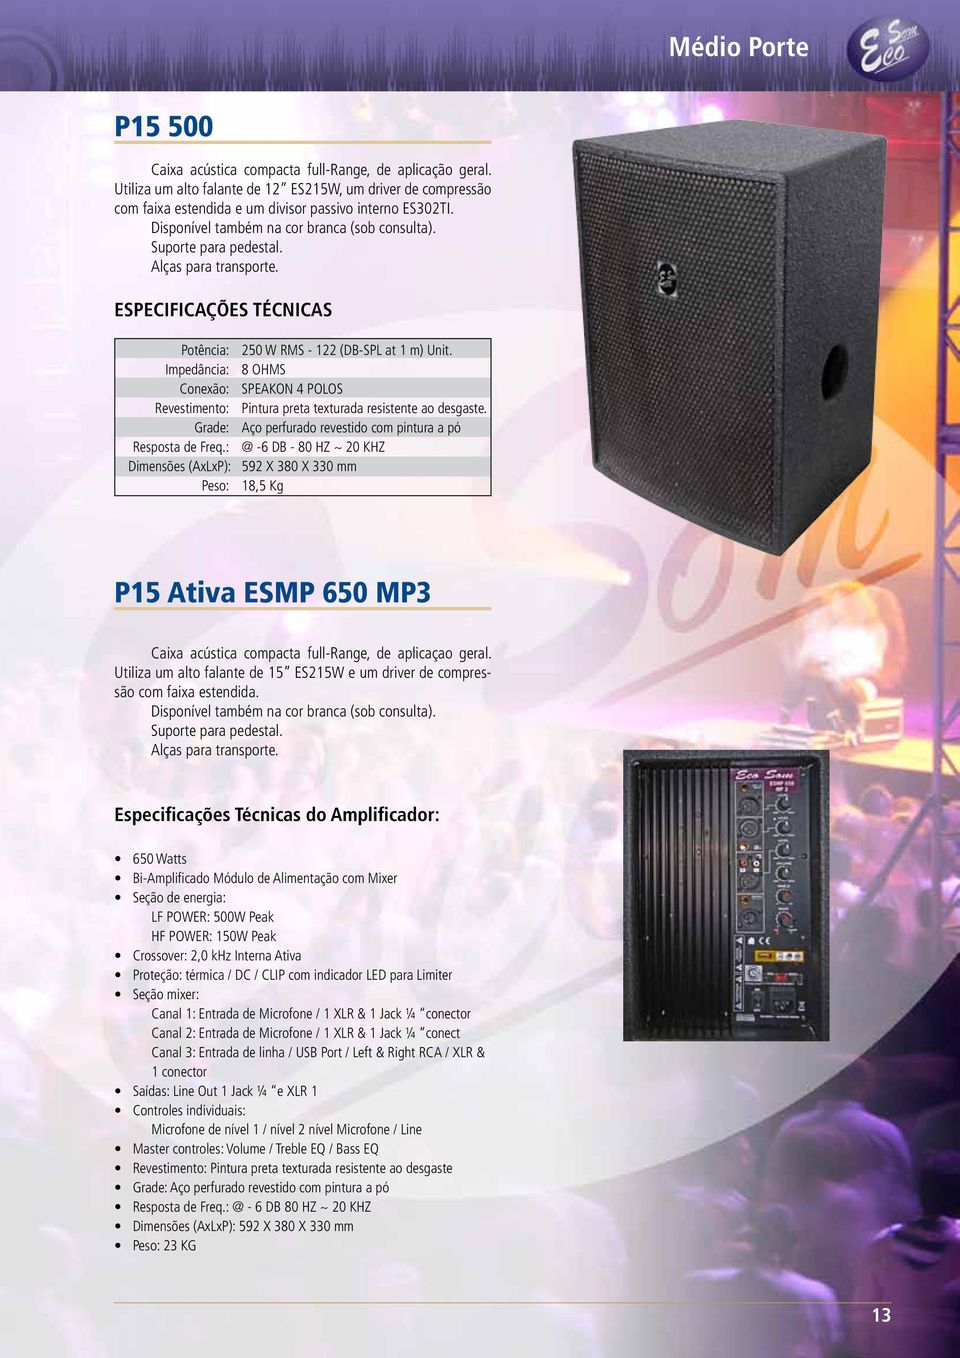 : @ -6 DB - 80 HZ ~ 20 KHZ Dimensões (AxLxP): 592 X 380 X 330 mm Peso: 18,5 Kg P15 Ativa ESMP 650 MP3 Caixa acústica compacta full-range, de aplicaçao geral.